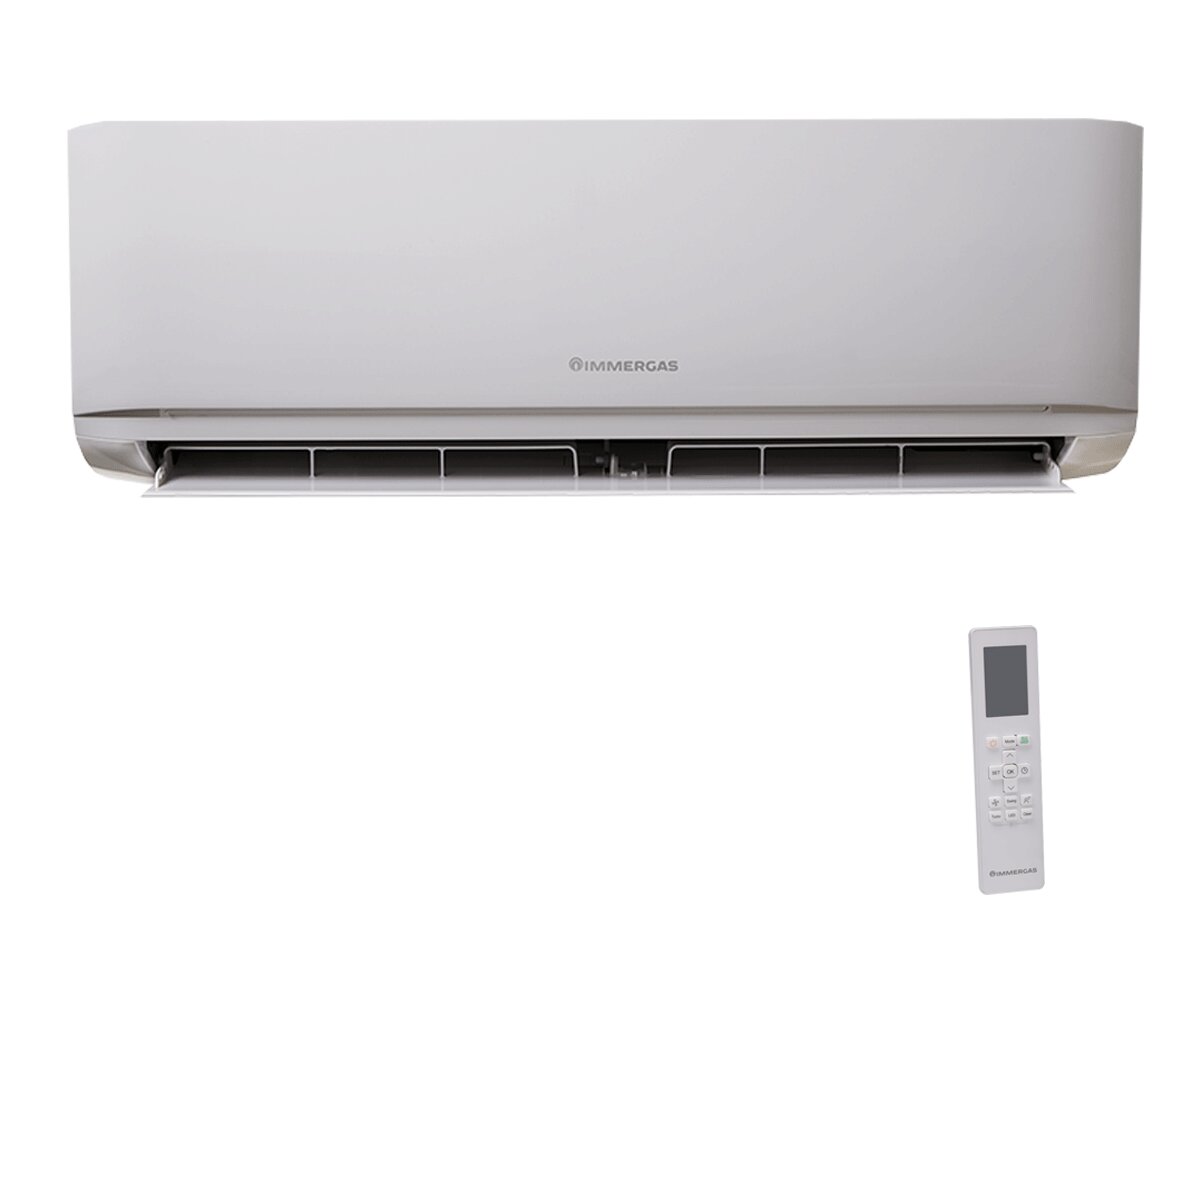 Immergas GOTHA Klimaanlage 12000 BTU R32 Inverter A+++/A++ WiFi